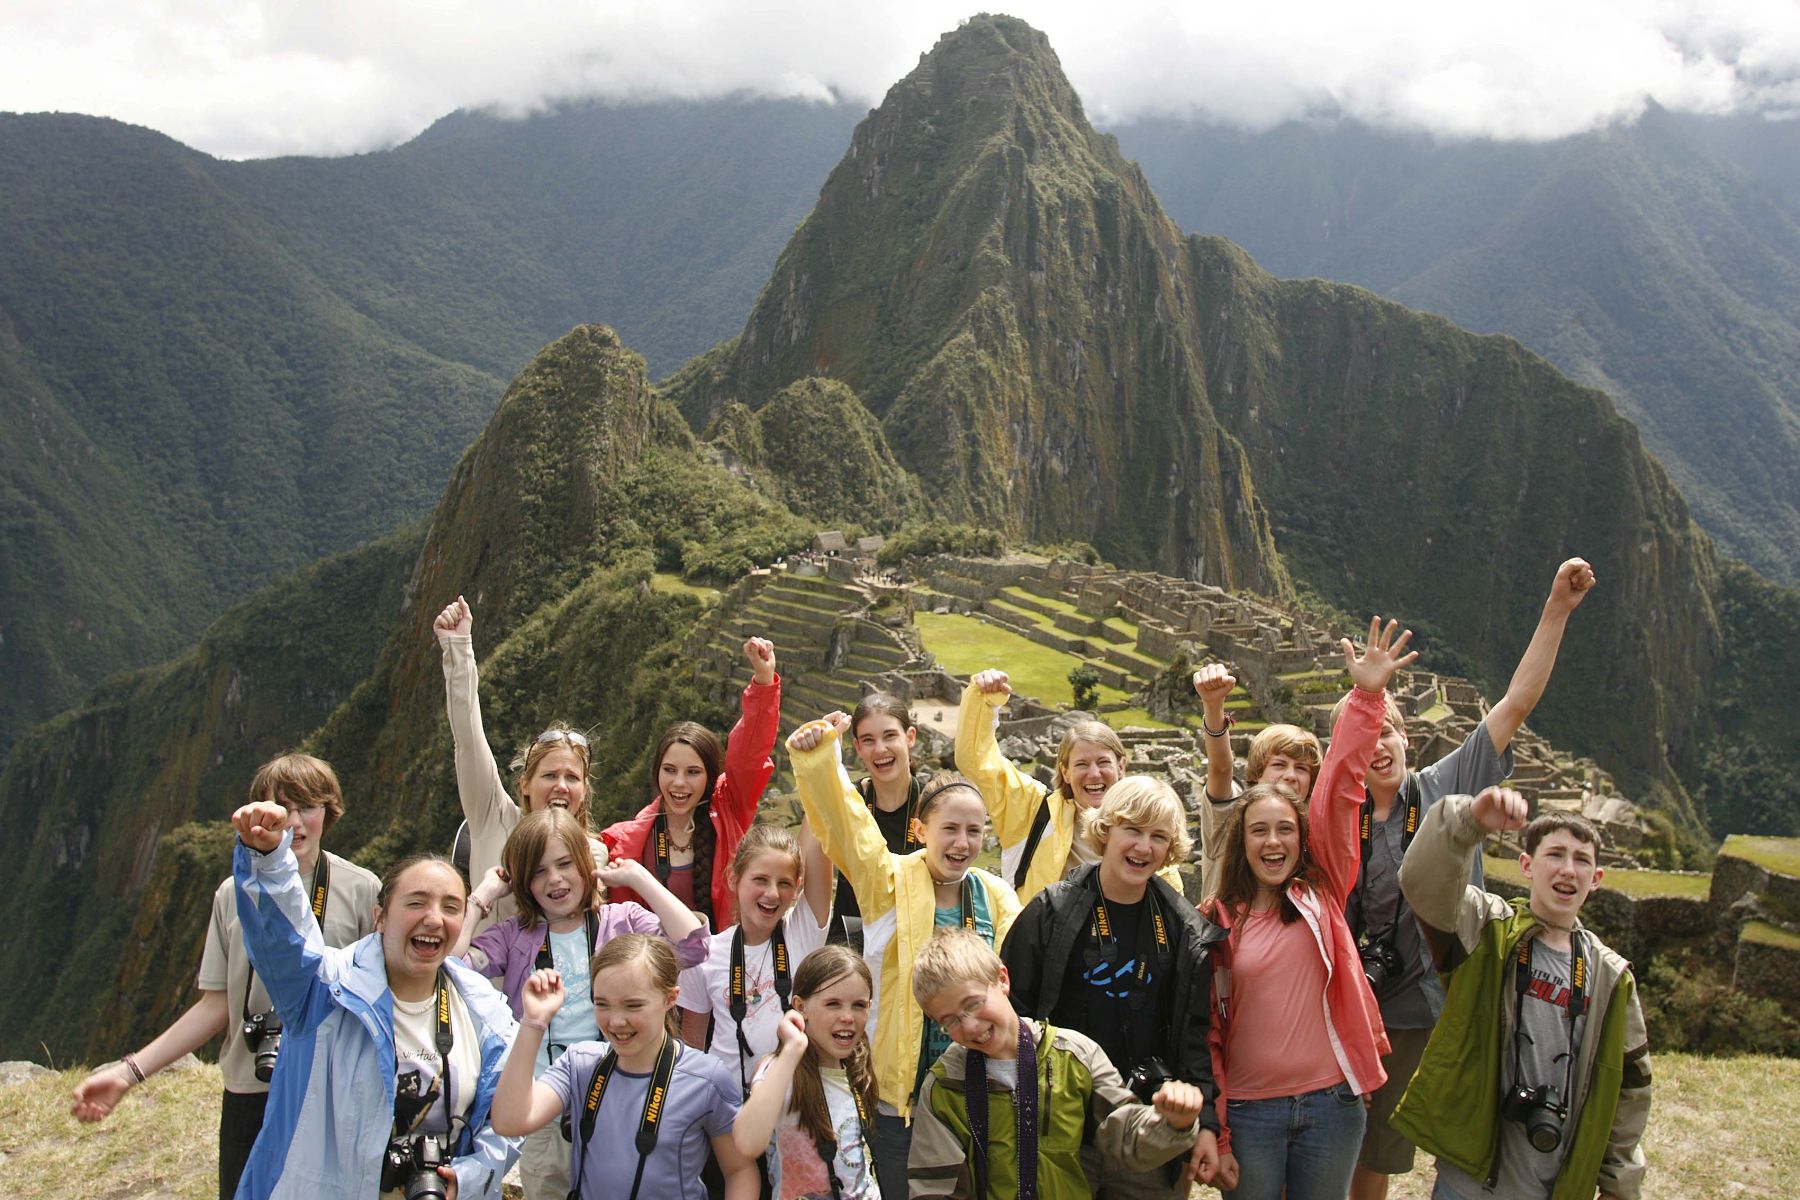 Foreign tourists visiting the Inca Citaldel of Machu Picchu, Peru.